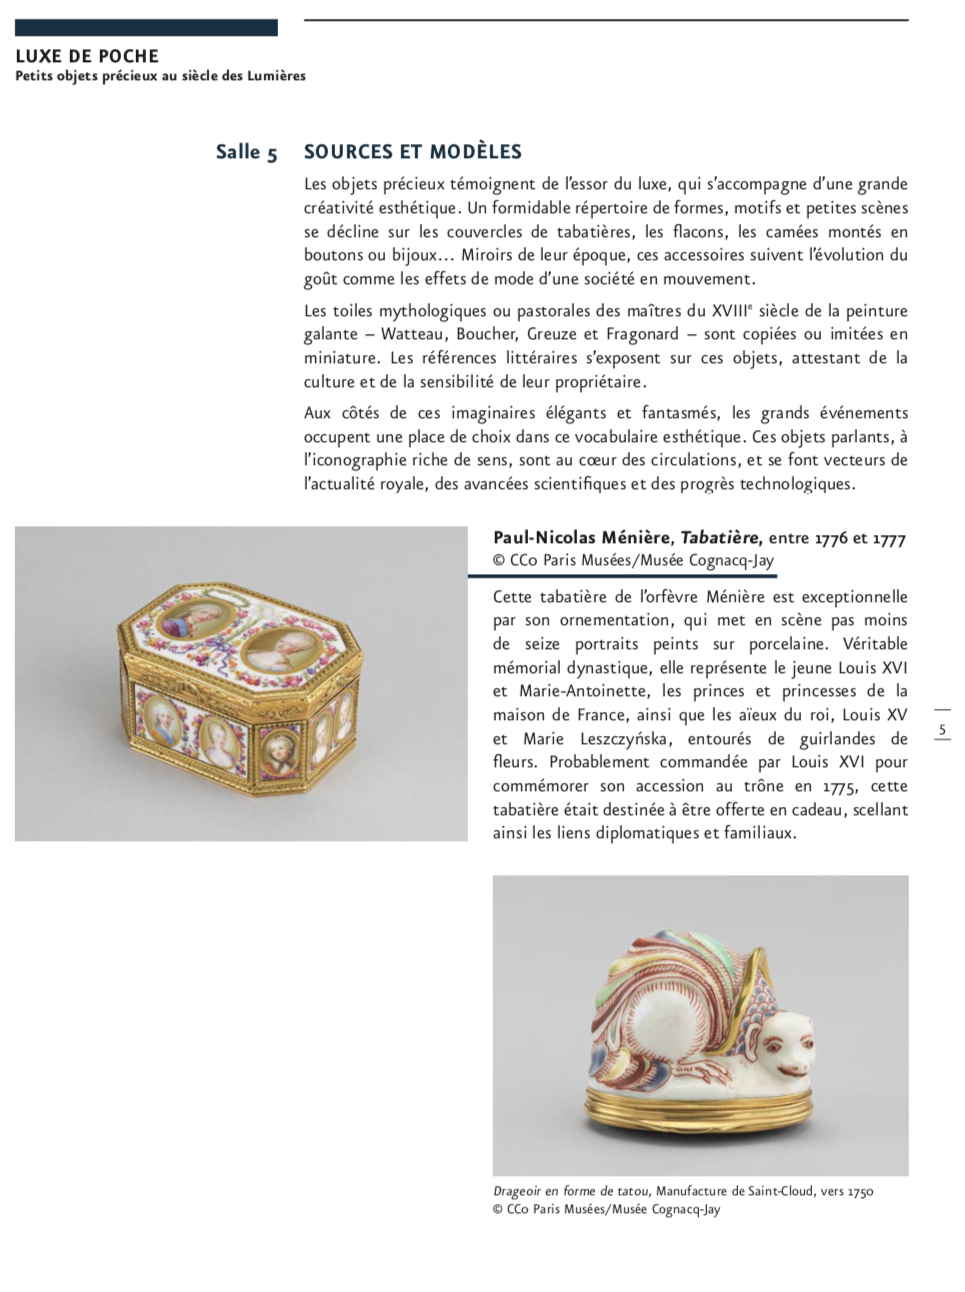 Exposition : Luxe de poche - Petits objets précieux au siècle des Lumières. Musée Cognacq-Jay Capt5775